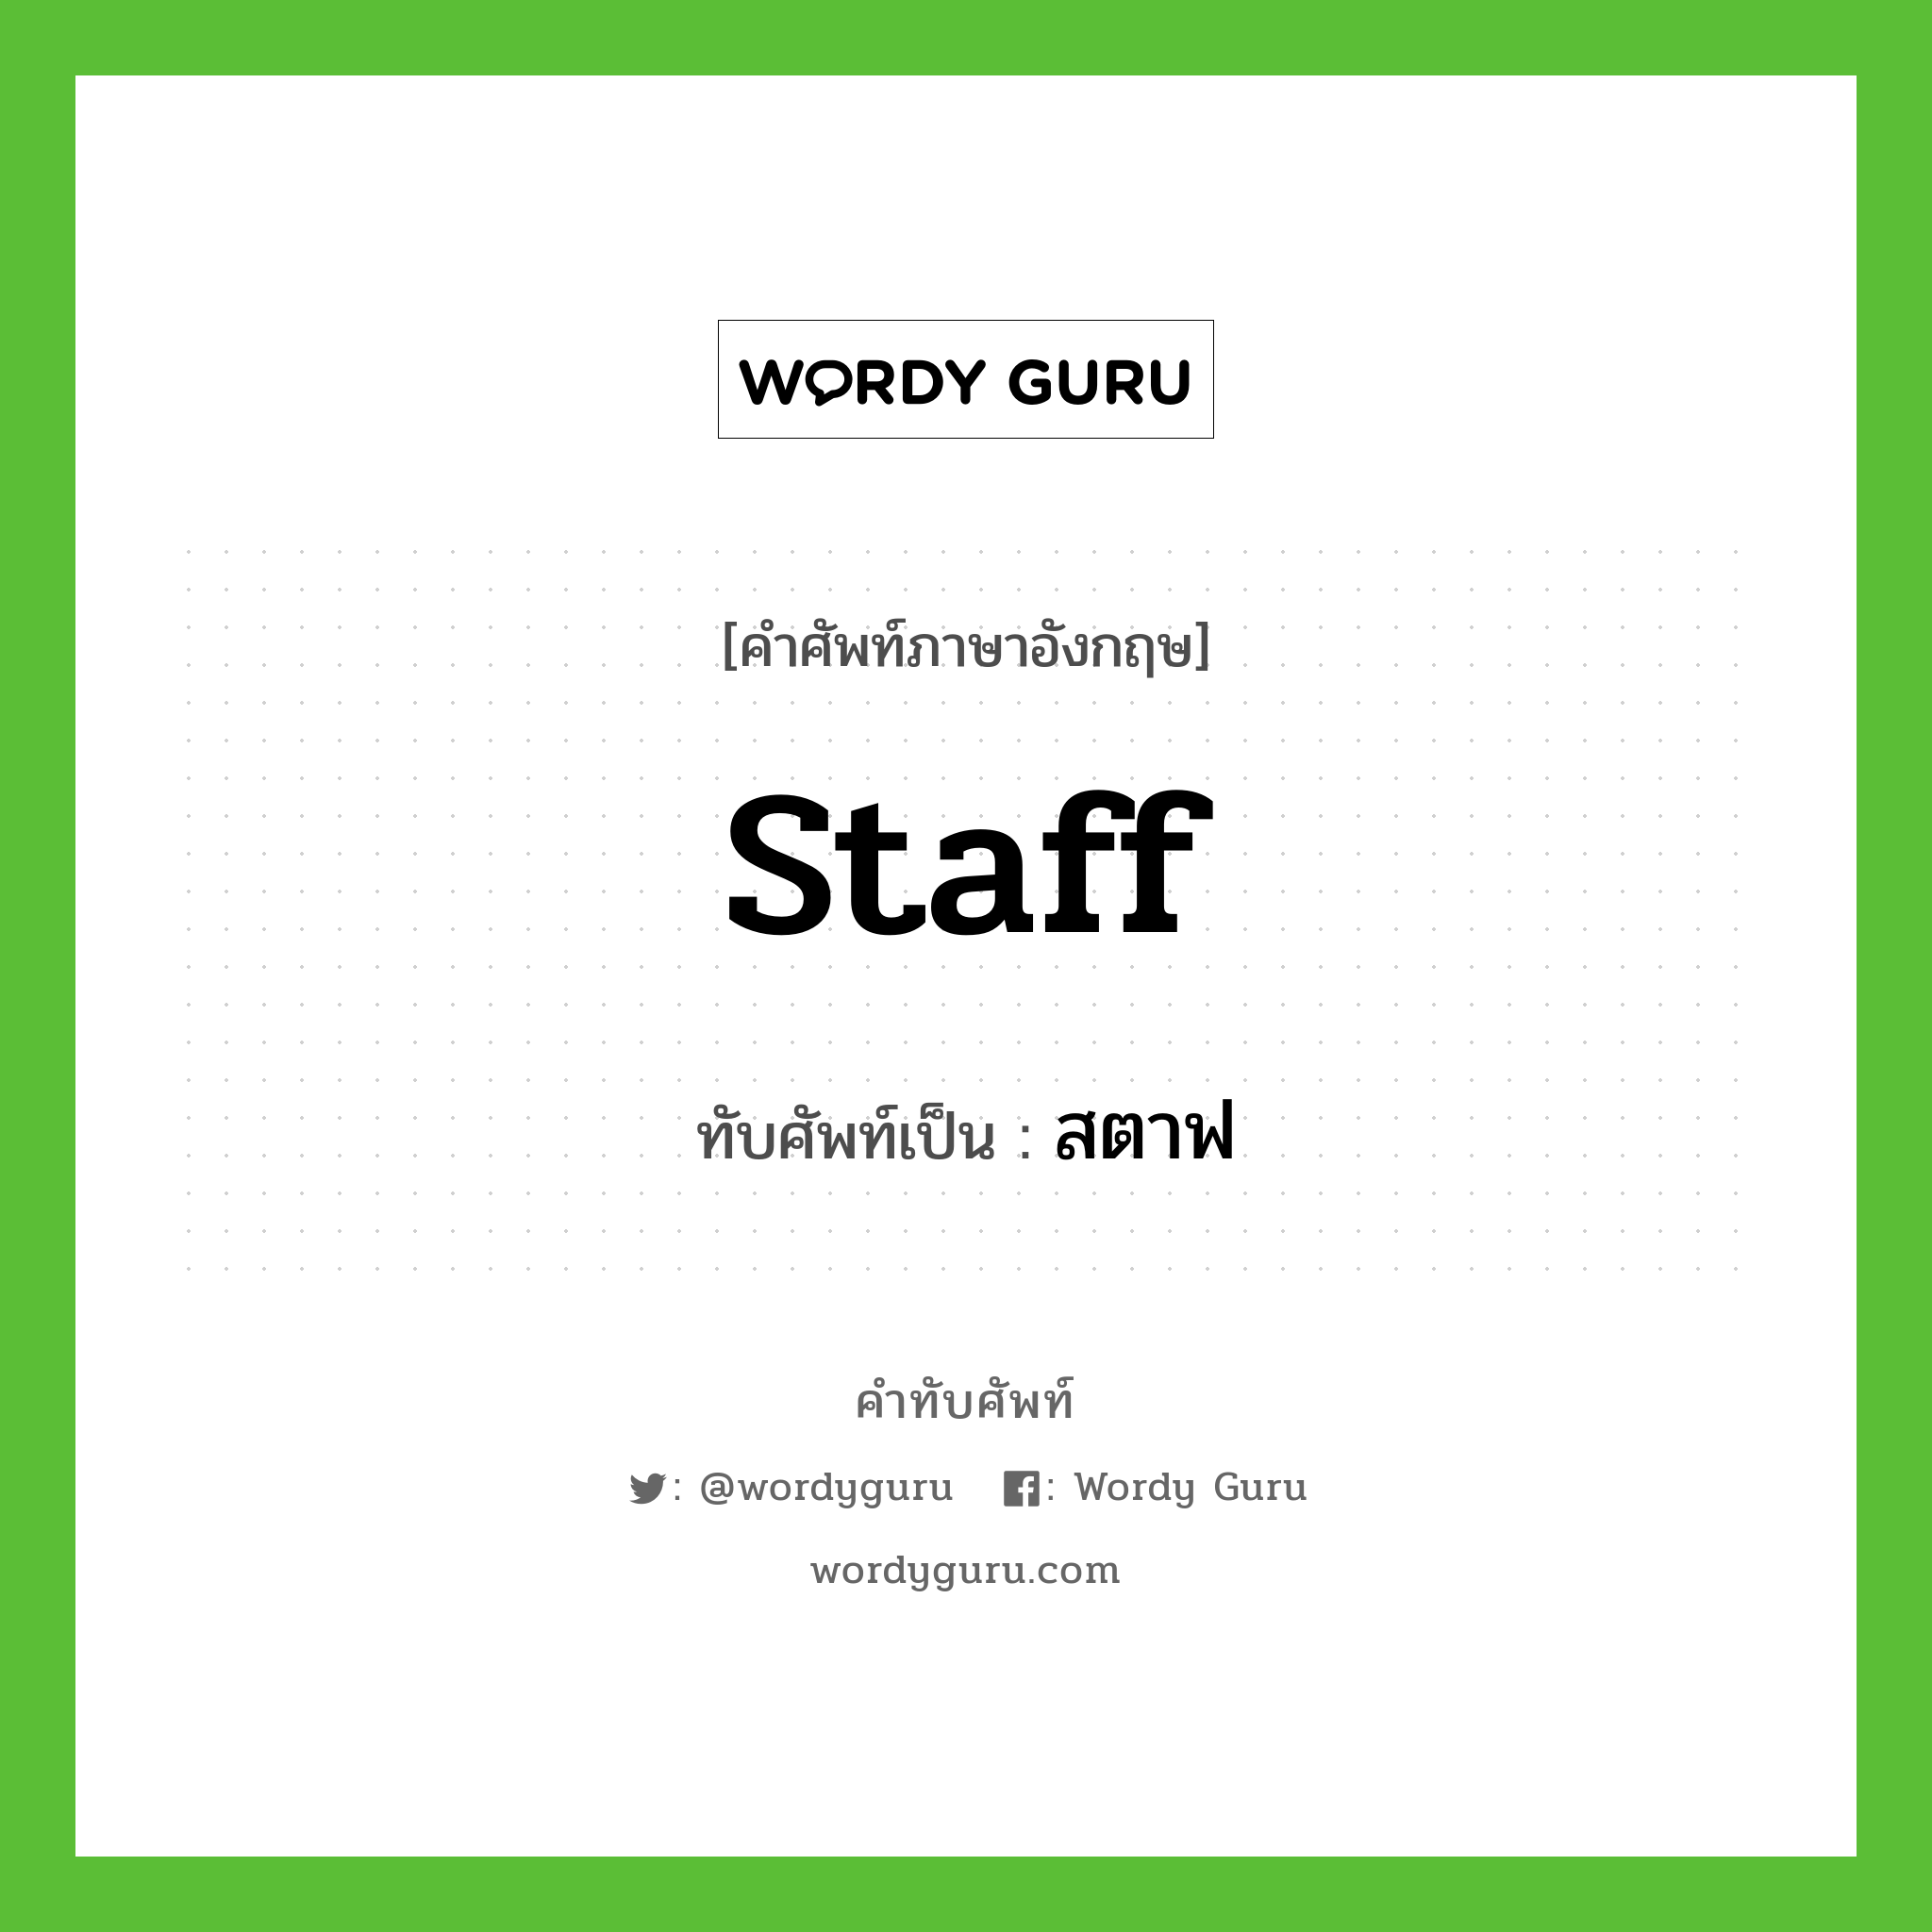 staff เขียนเป็นคำไทยว่าอะไร?, คำศัพท์ภาษาอังกฤษ staff ทับศัพท์เป็น สตาฟ